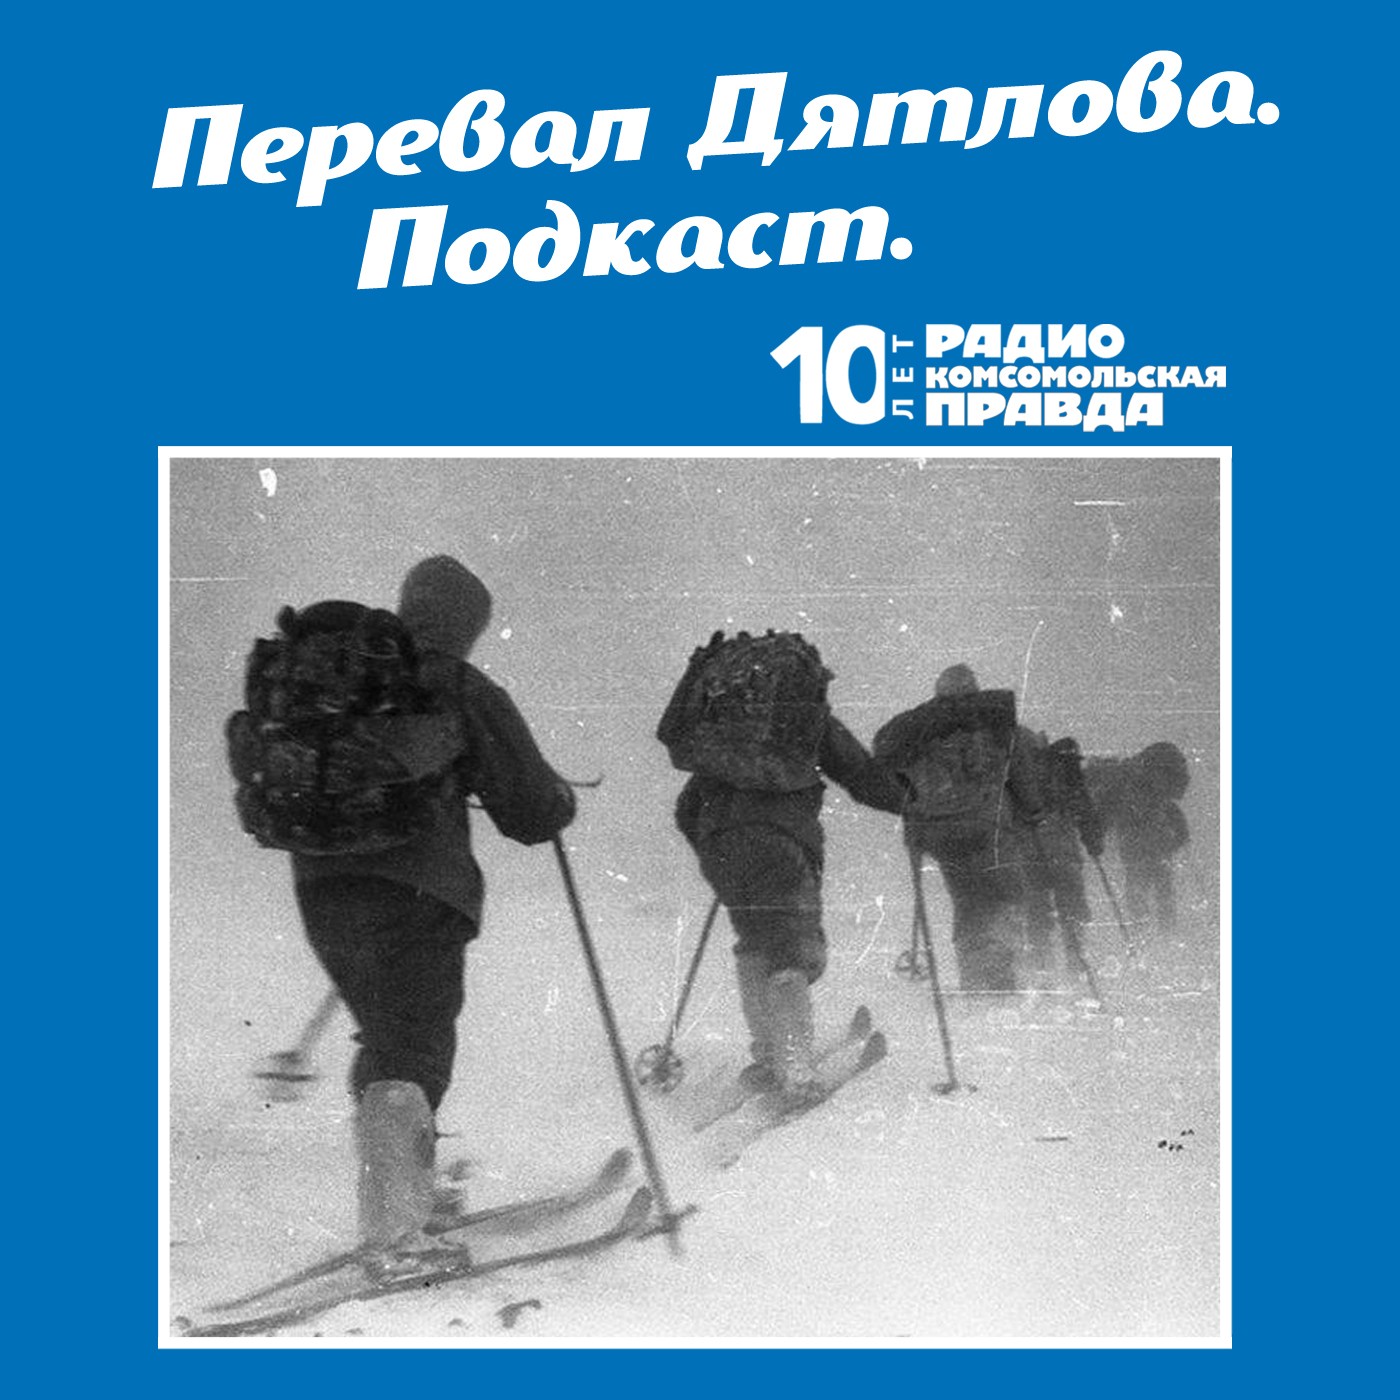 Скачать Трагедия на перевале Дятлова: 64 версии загадочной гибели туристов в 1959 году. Часть 111 и 112 - Радио «Комсомольская правда»